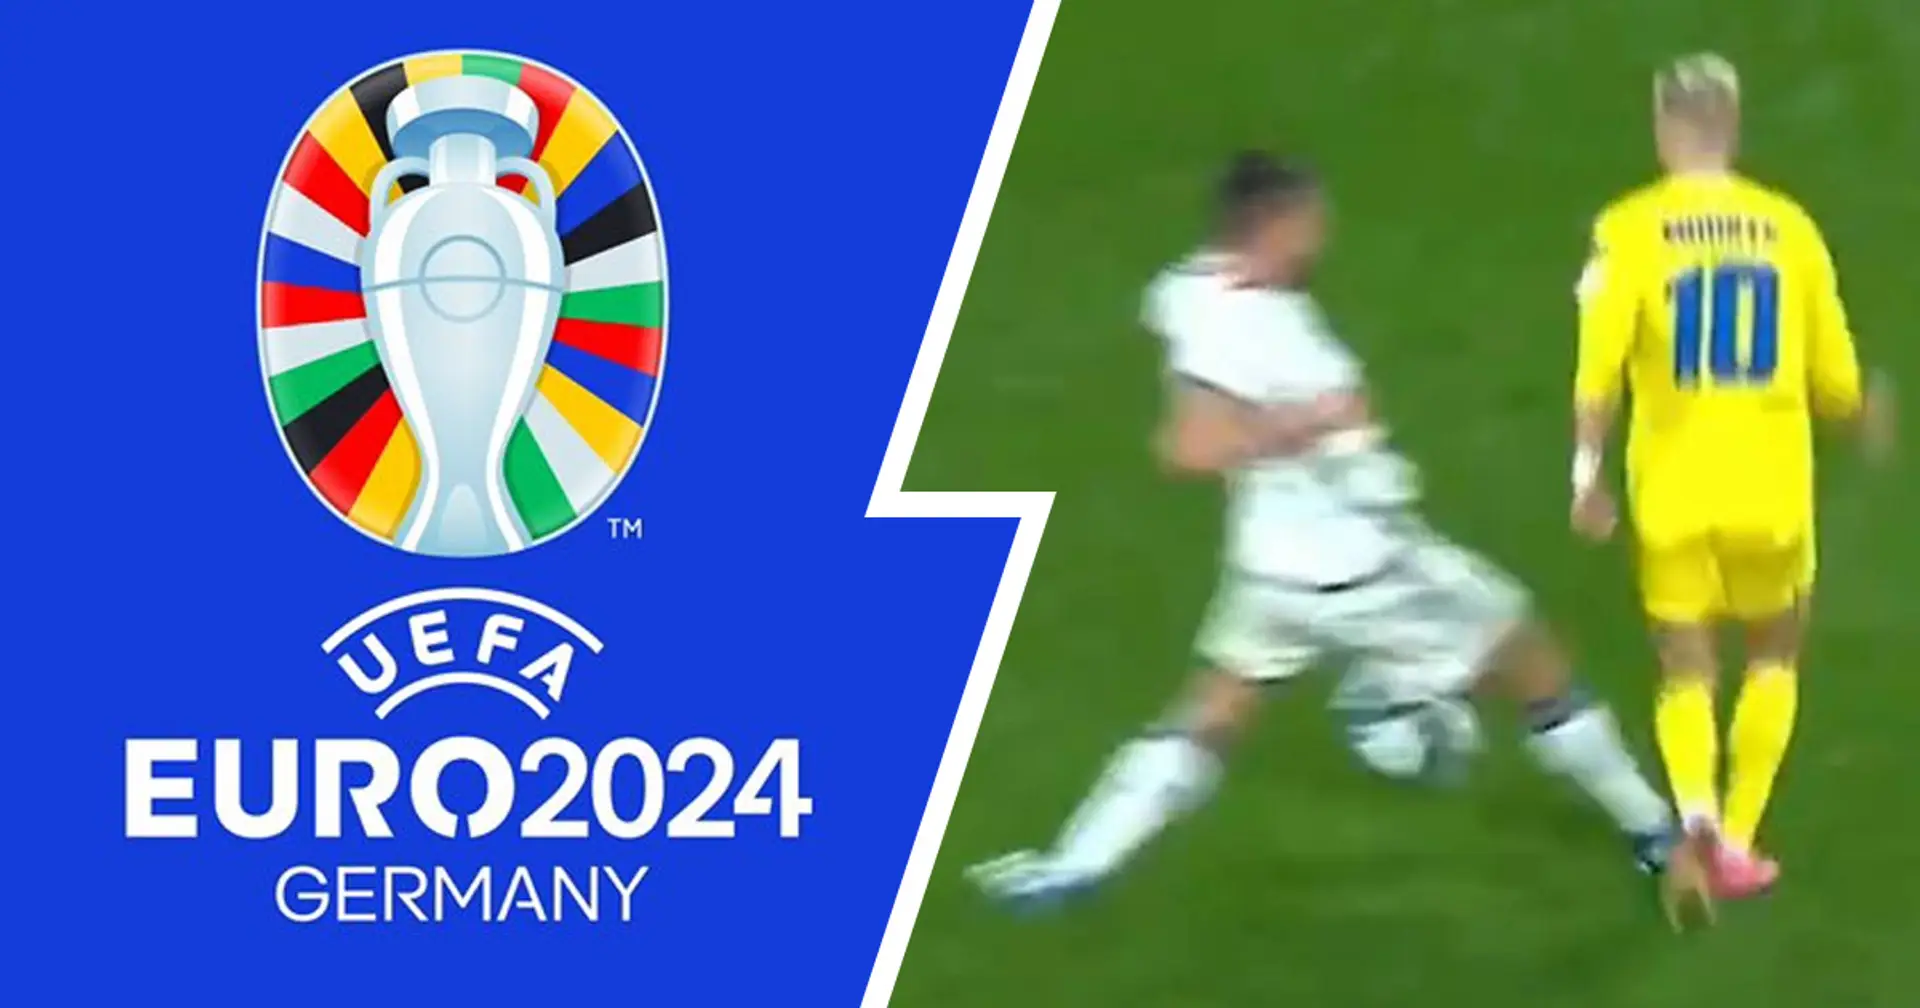 Italia qualificata a EURO24 ma per i tifosi della Juventus é tutto un (assurdo) complotto: le reazioni dei rossoneri